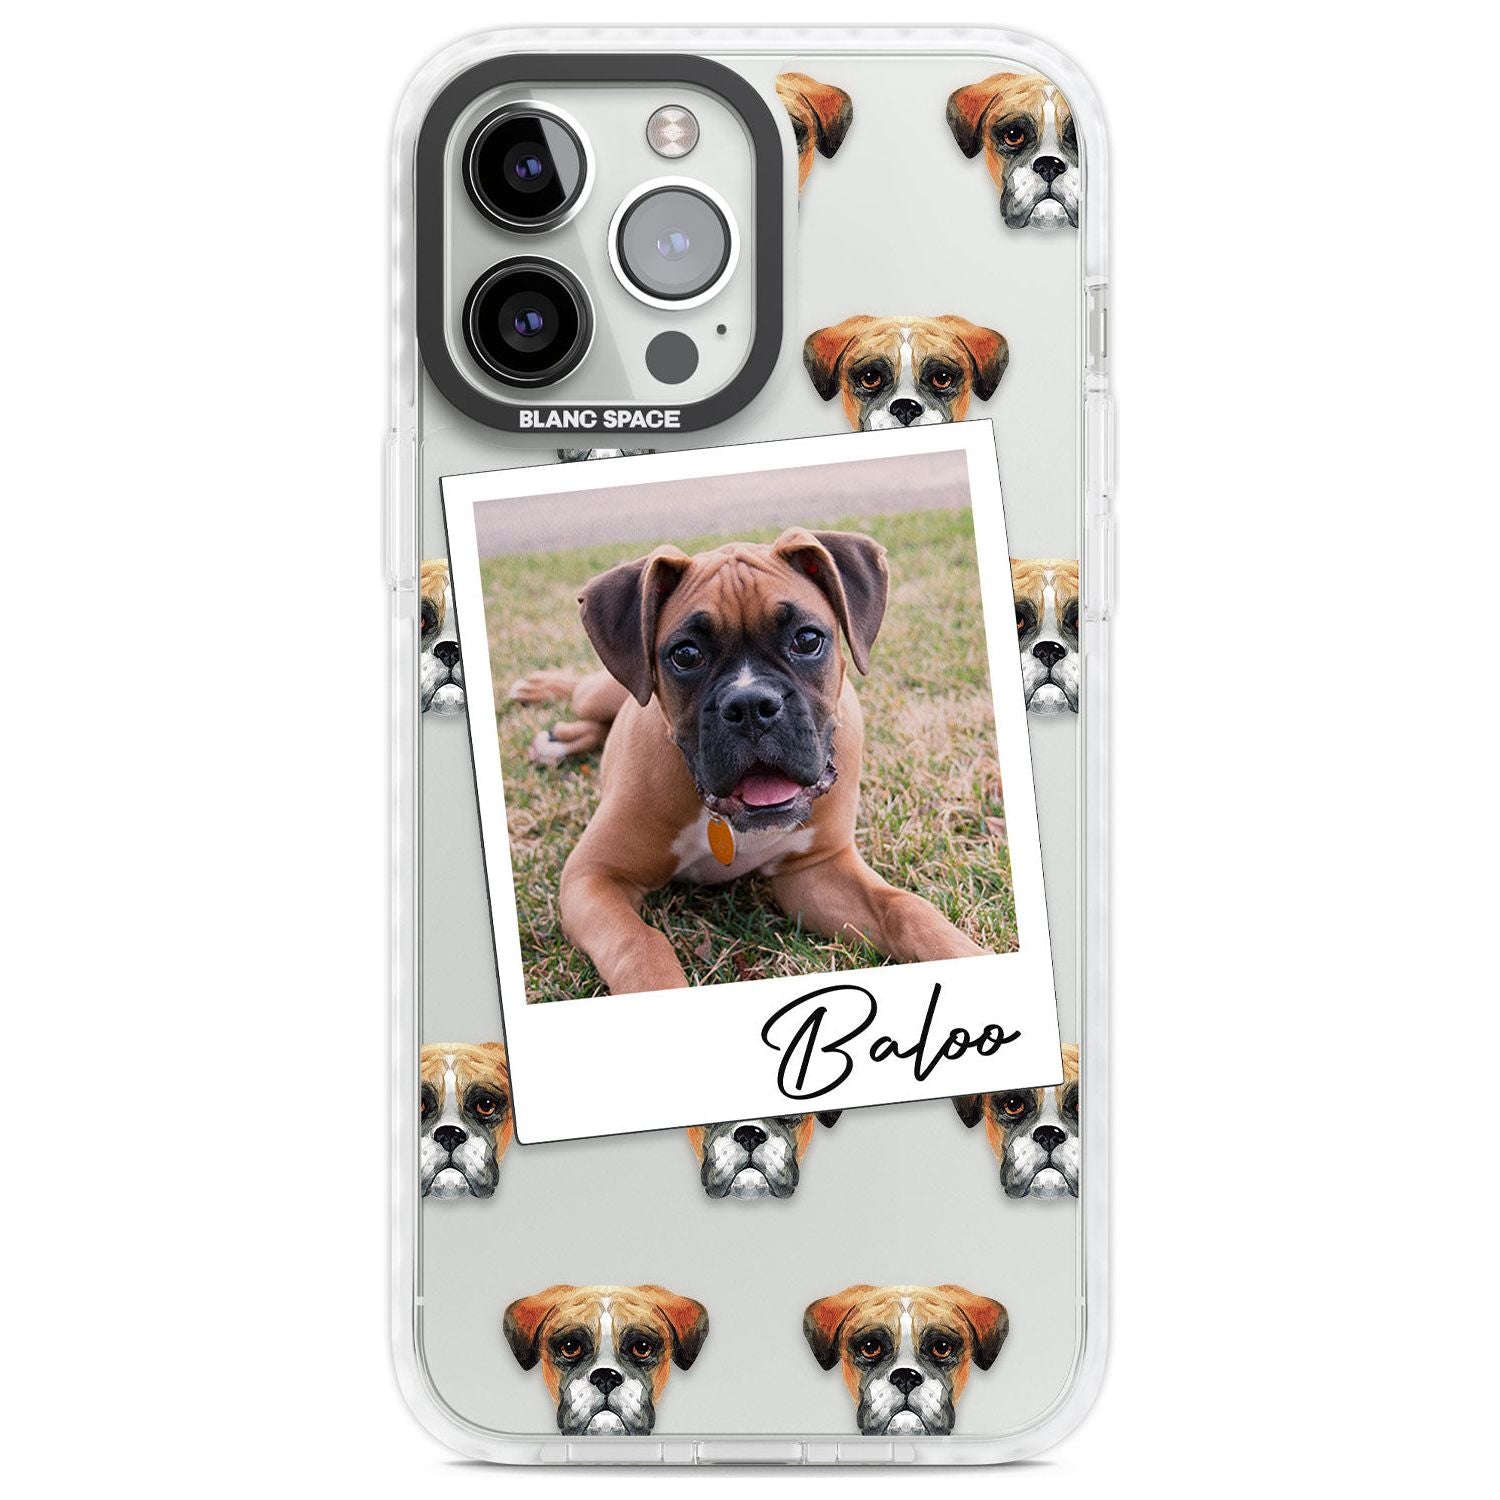 Personalised Boxer - Dog Photo Custom Phone Case iPhone 13 Pro Max / Impact Case,iPhone 14 Pro Max / Impact Case Blanc Space